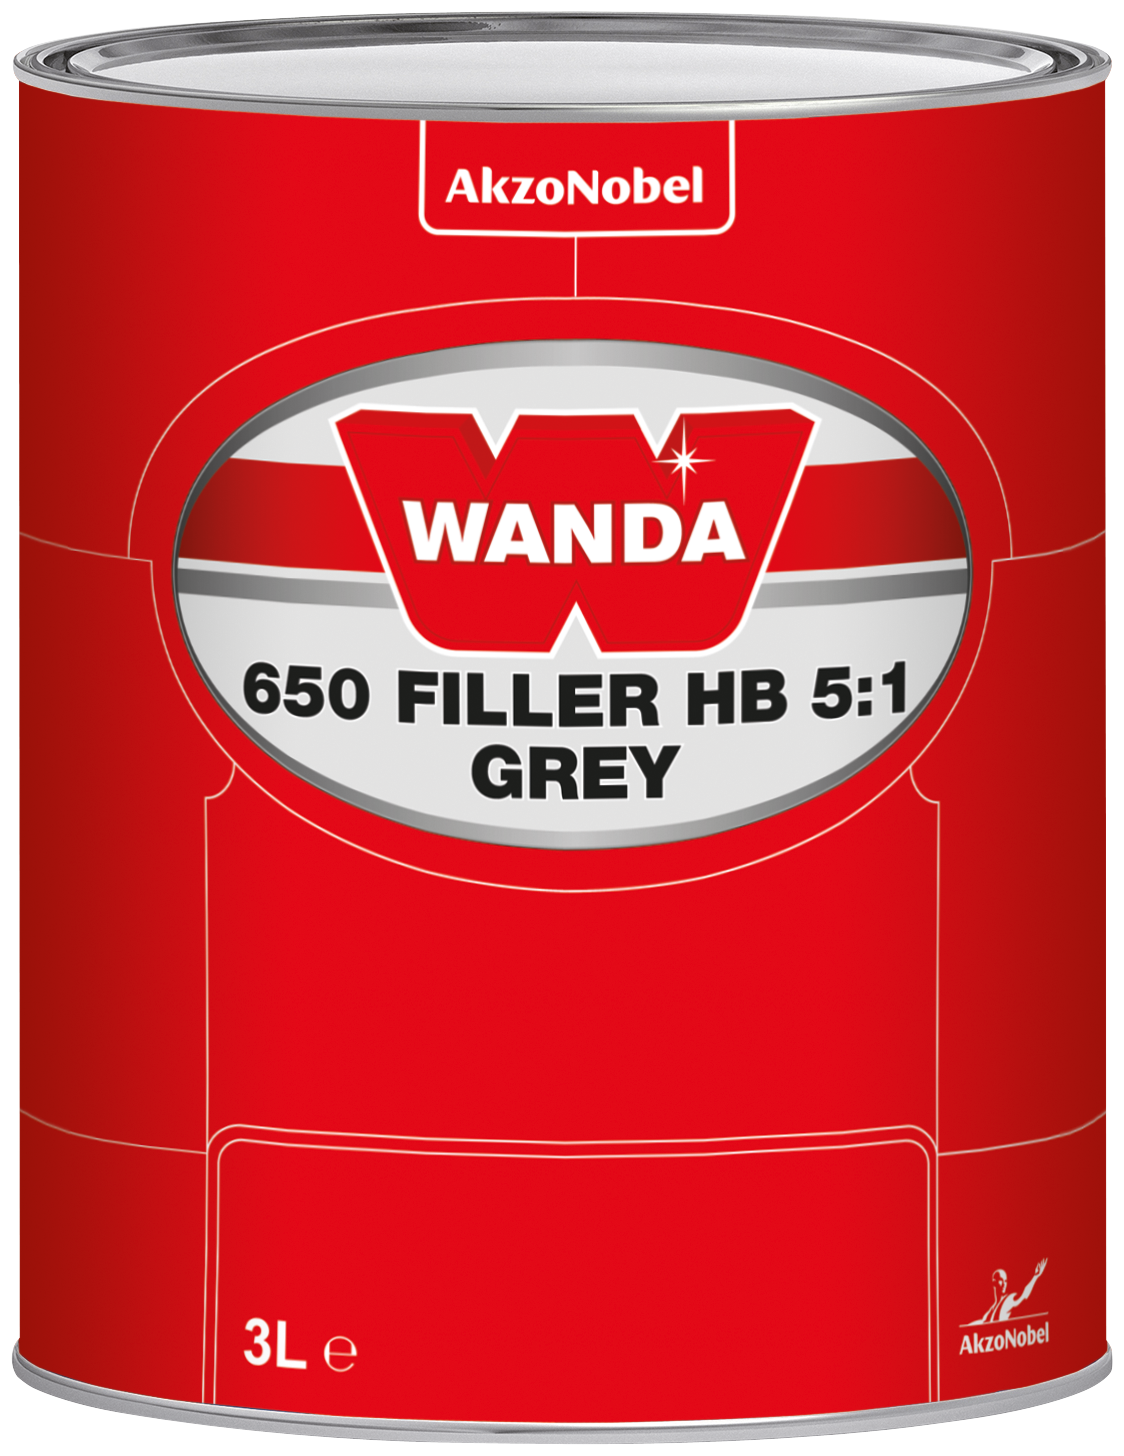 wan_650-filler-hb-51-grey_3l